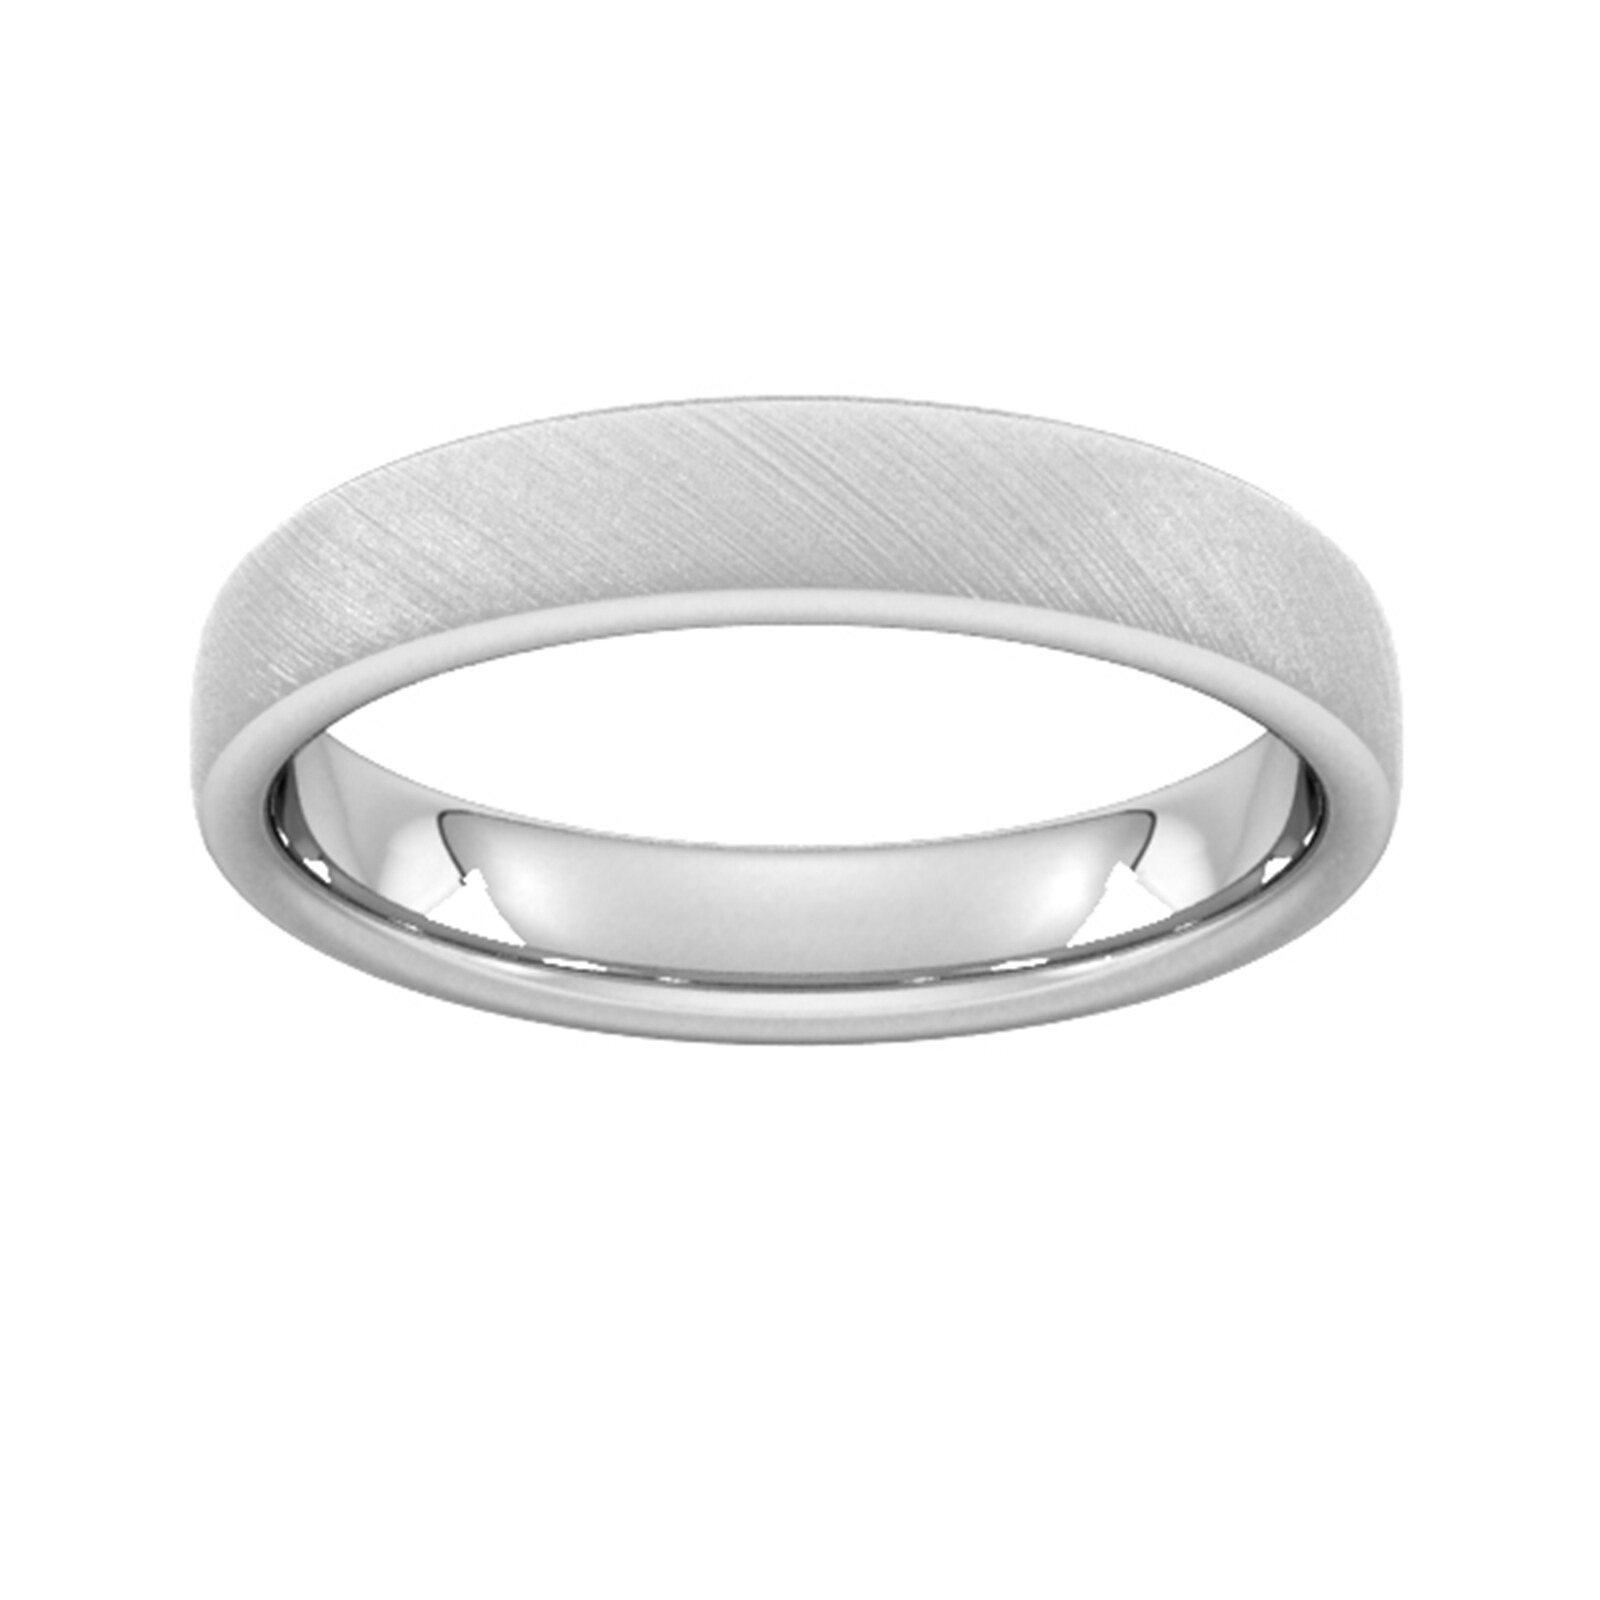 4mm Slight Court Extra Heavy Diagonal Matt Finish Wedding Ring In 950 Palladium - Ring Size N